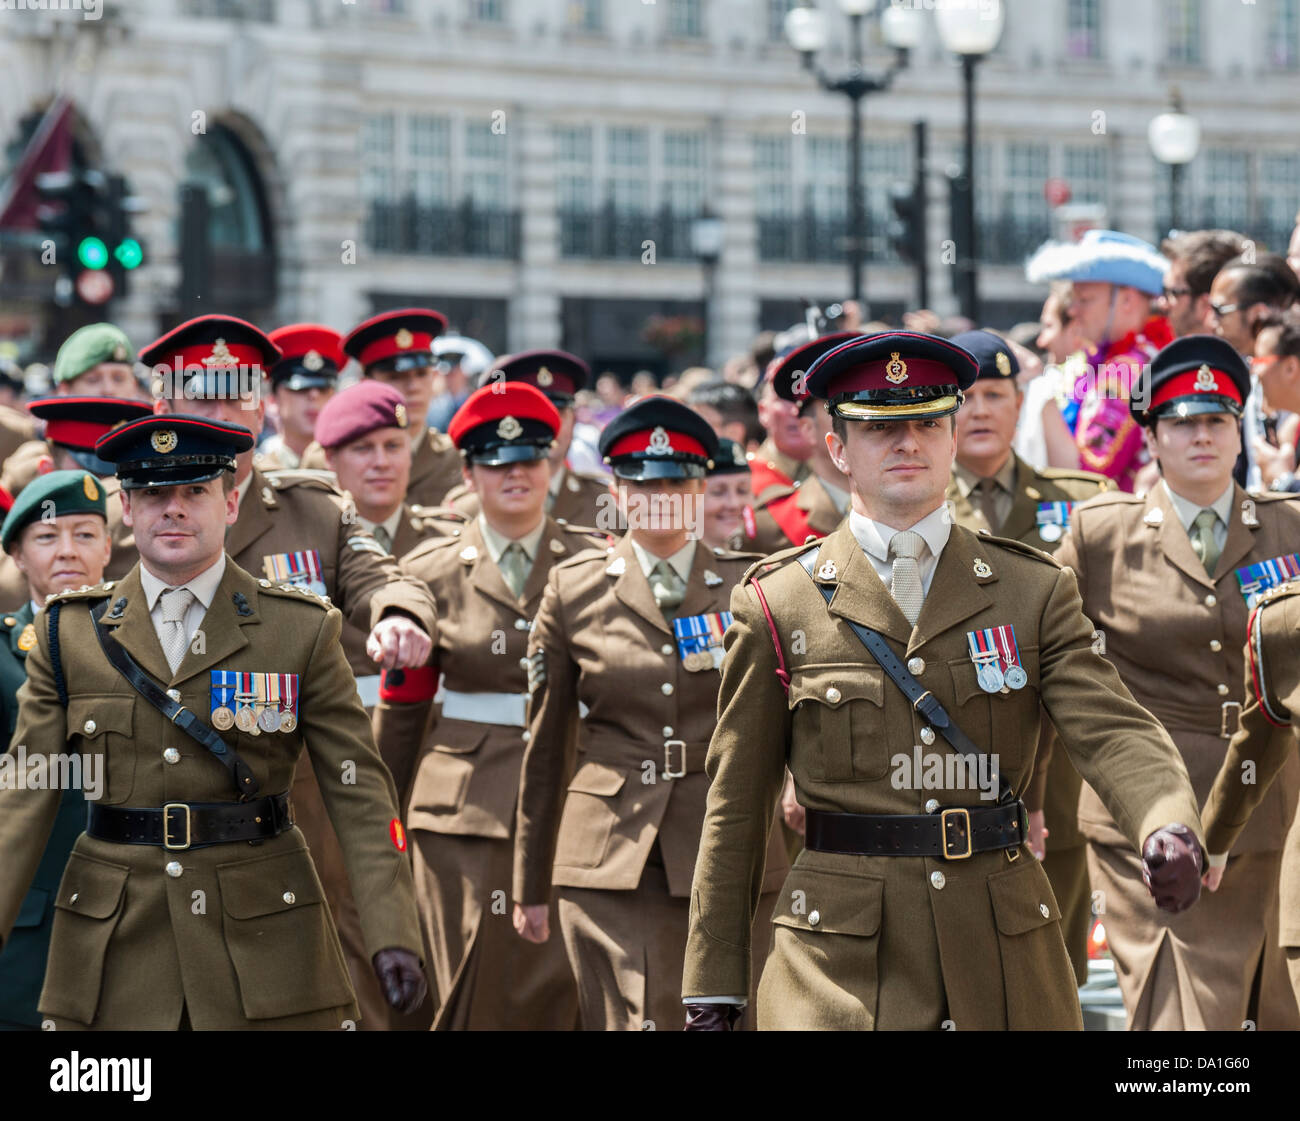 Un oficial llevando un contingente del ejército participantes en la marcha del orgullo gay de Londres. Foto de stock